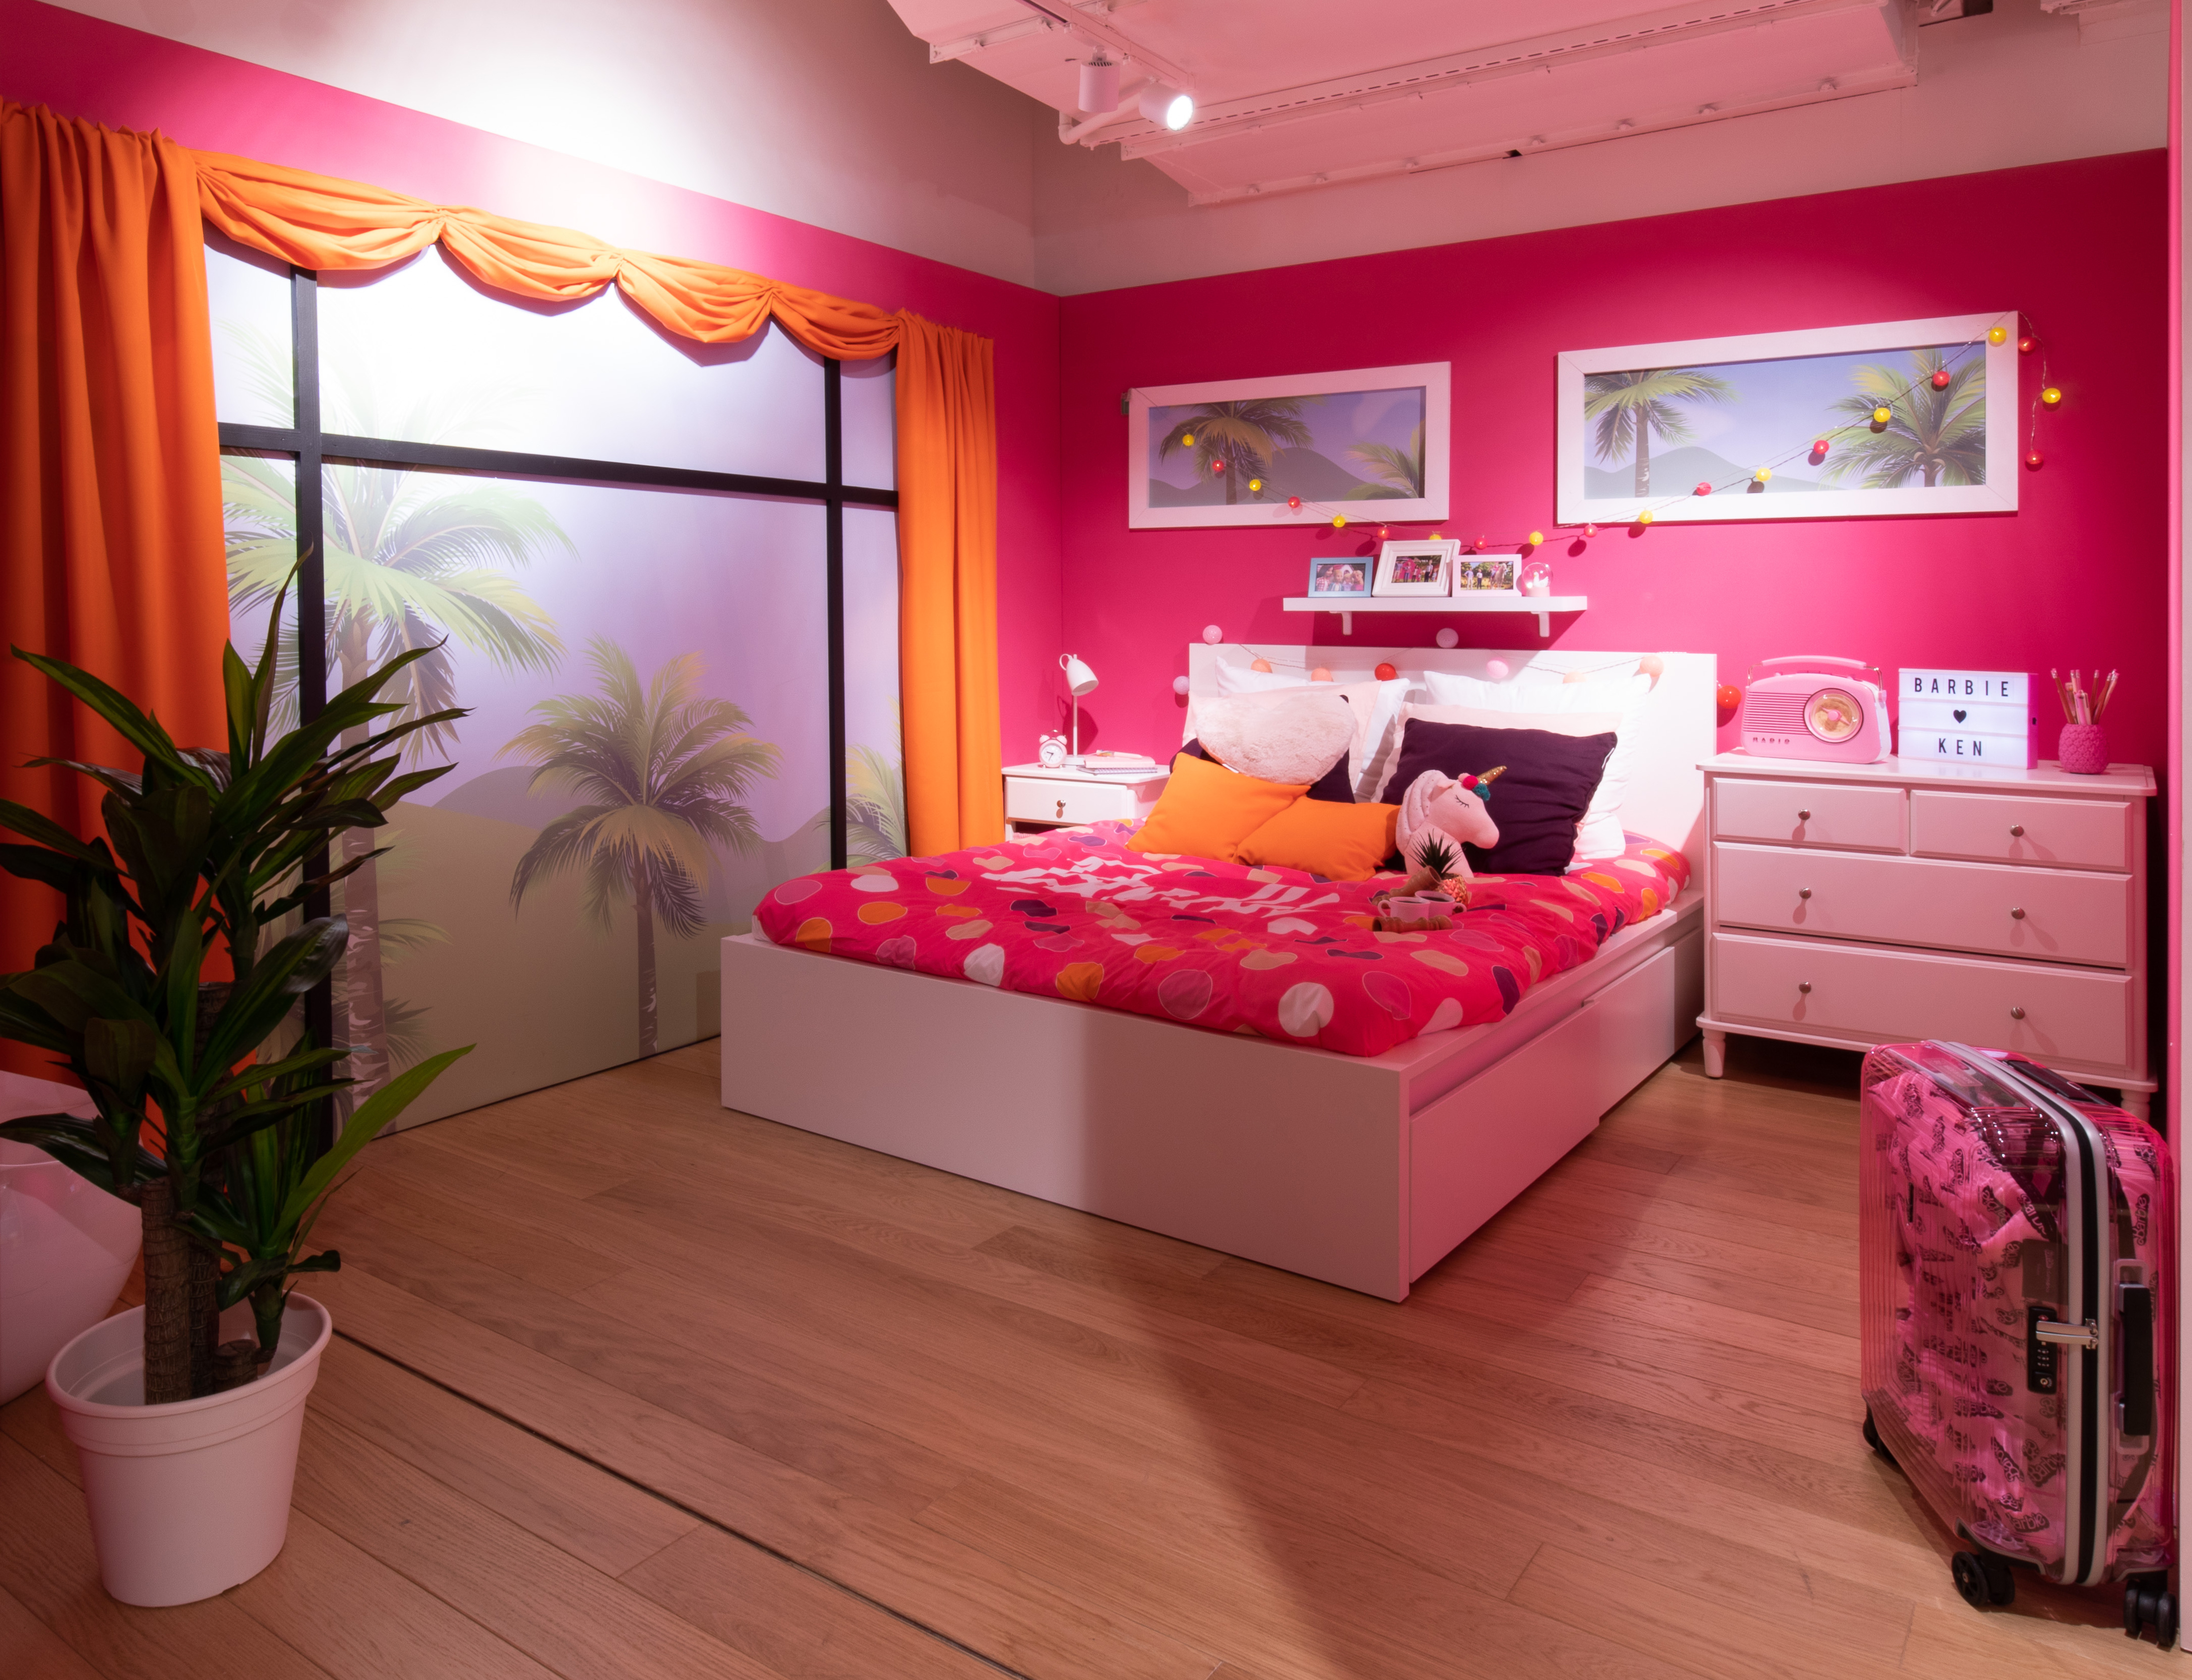 Icona di stile e Musa Ispiratrice Barbie mette su la "casa dei sogni" e lo fa in dimensioni reali presso le Galeries Lafayette Paris Haussman 